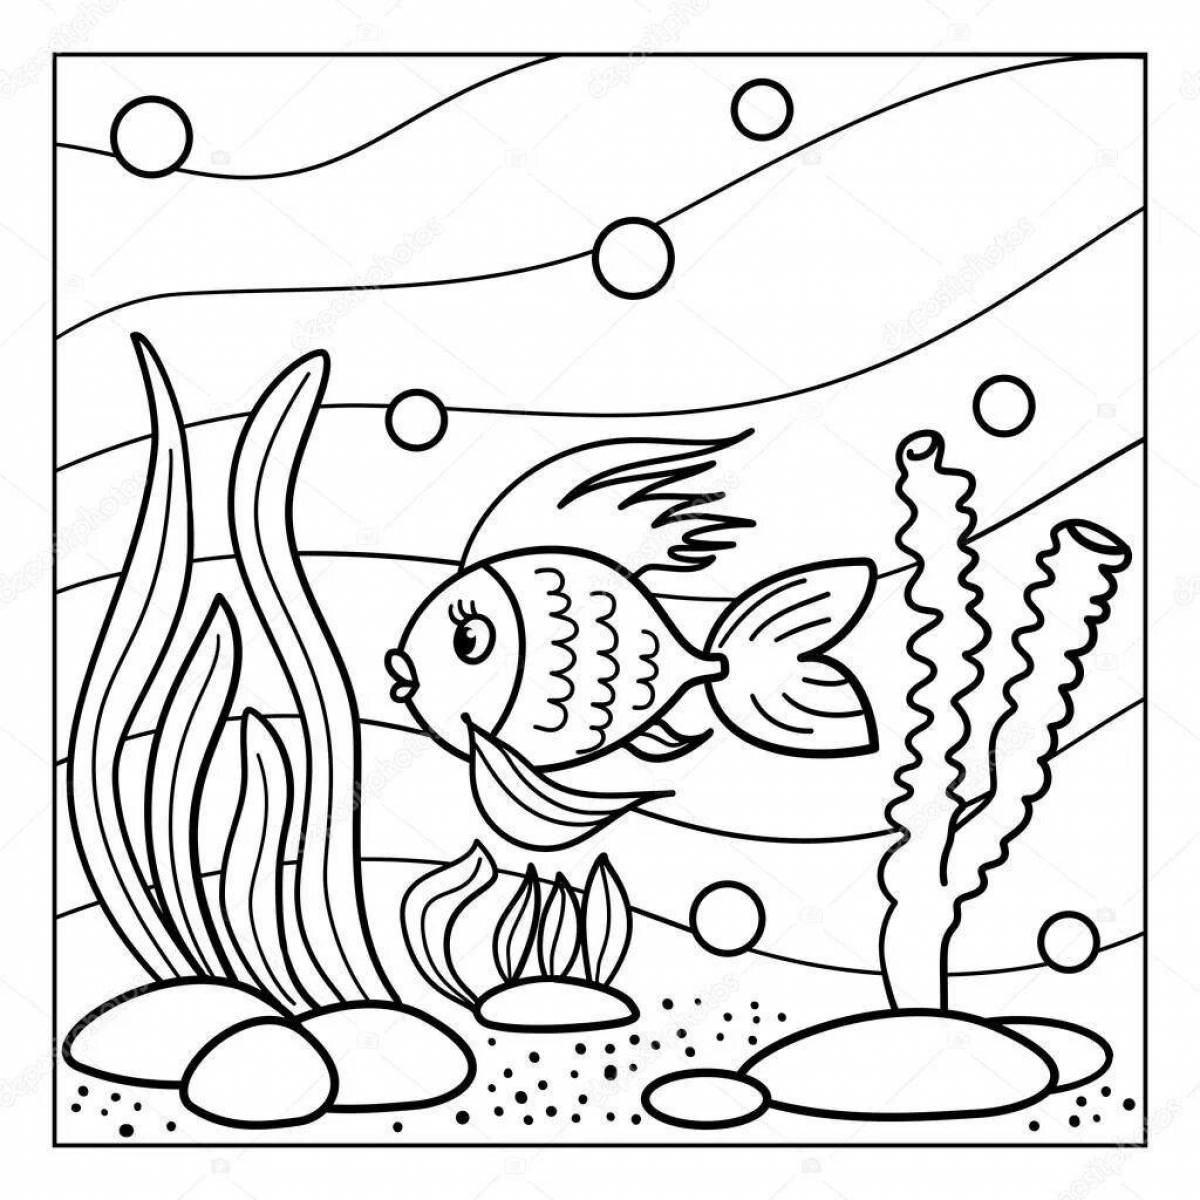 Adorable fish in the aquarium coloring book